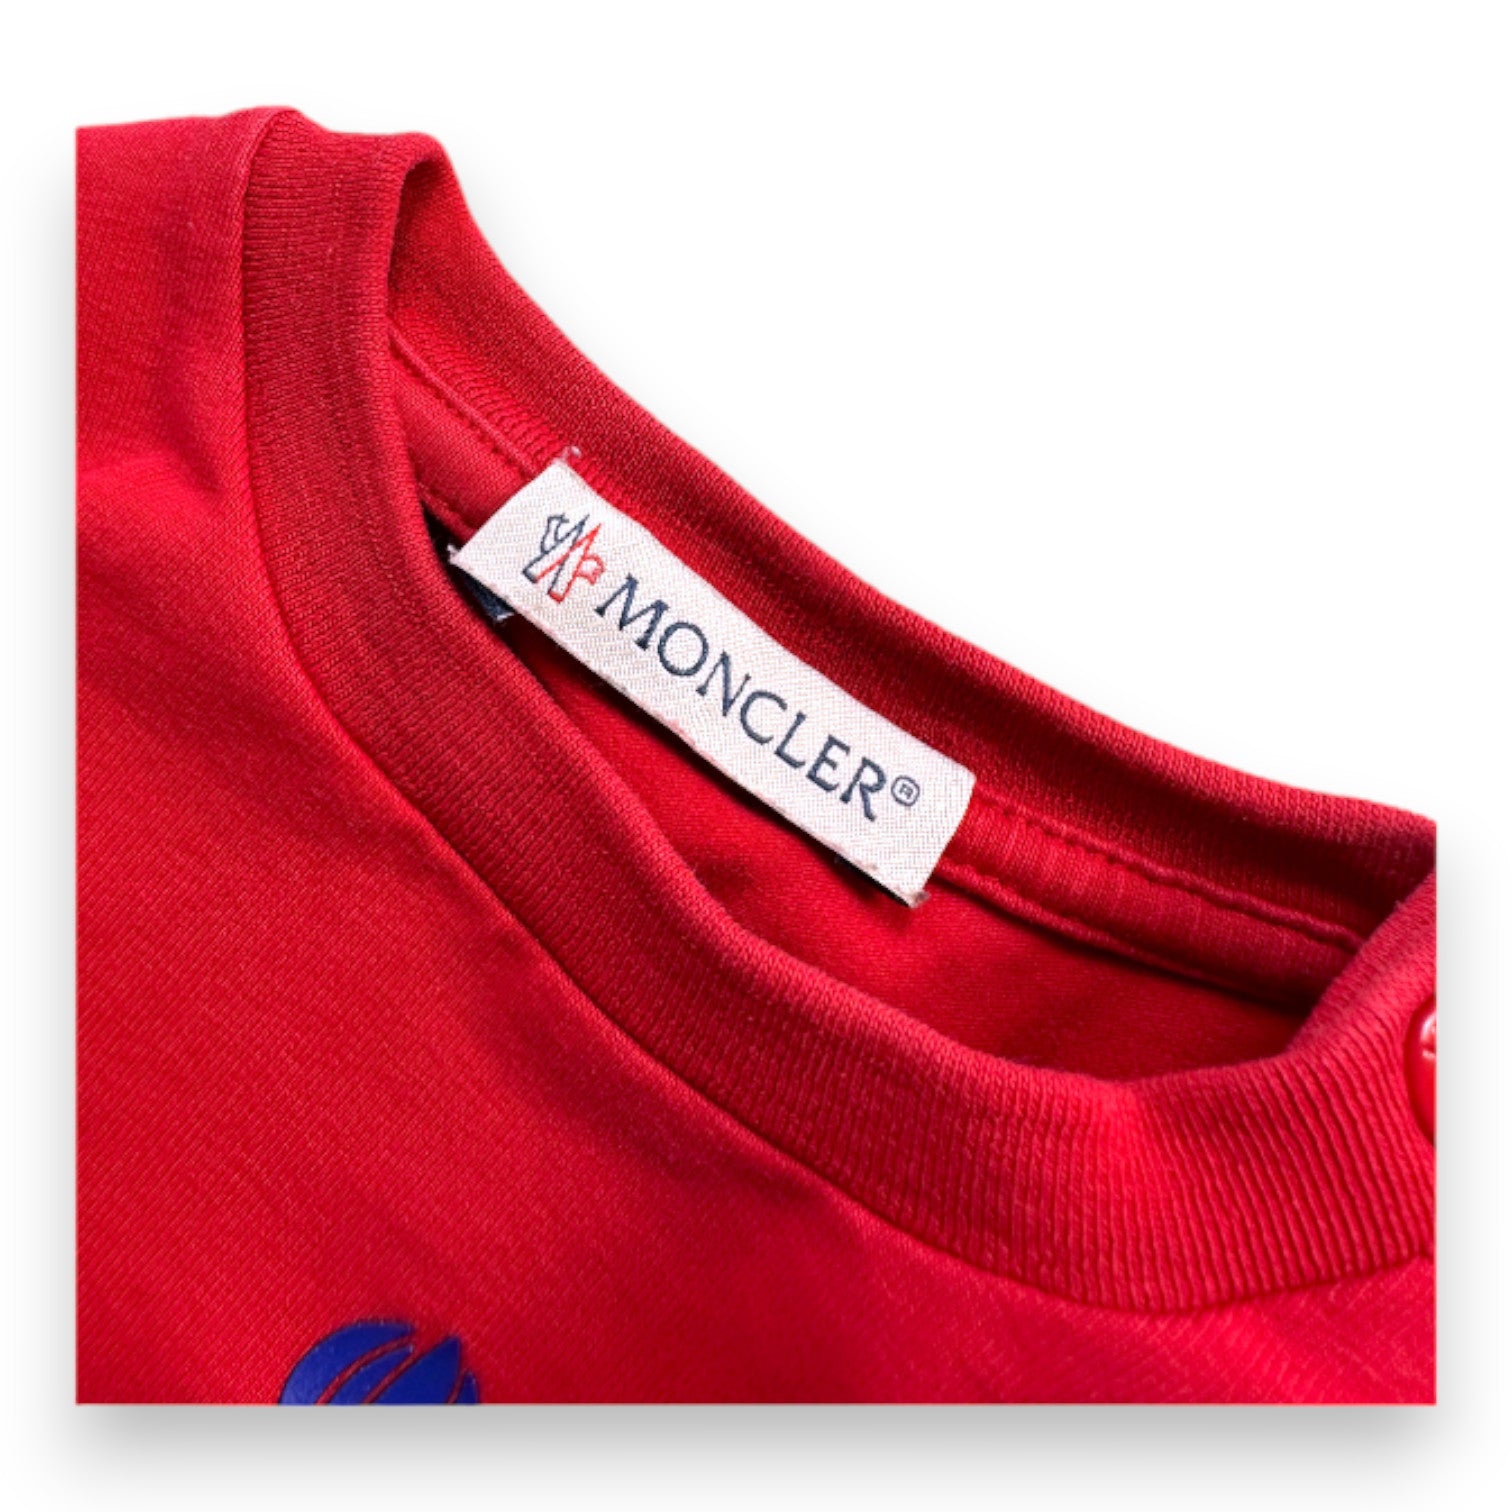 MONCLER - T-shirt à manches longues rouge avec imprimé - 3 mois